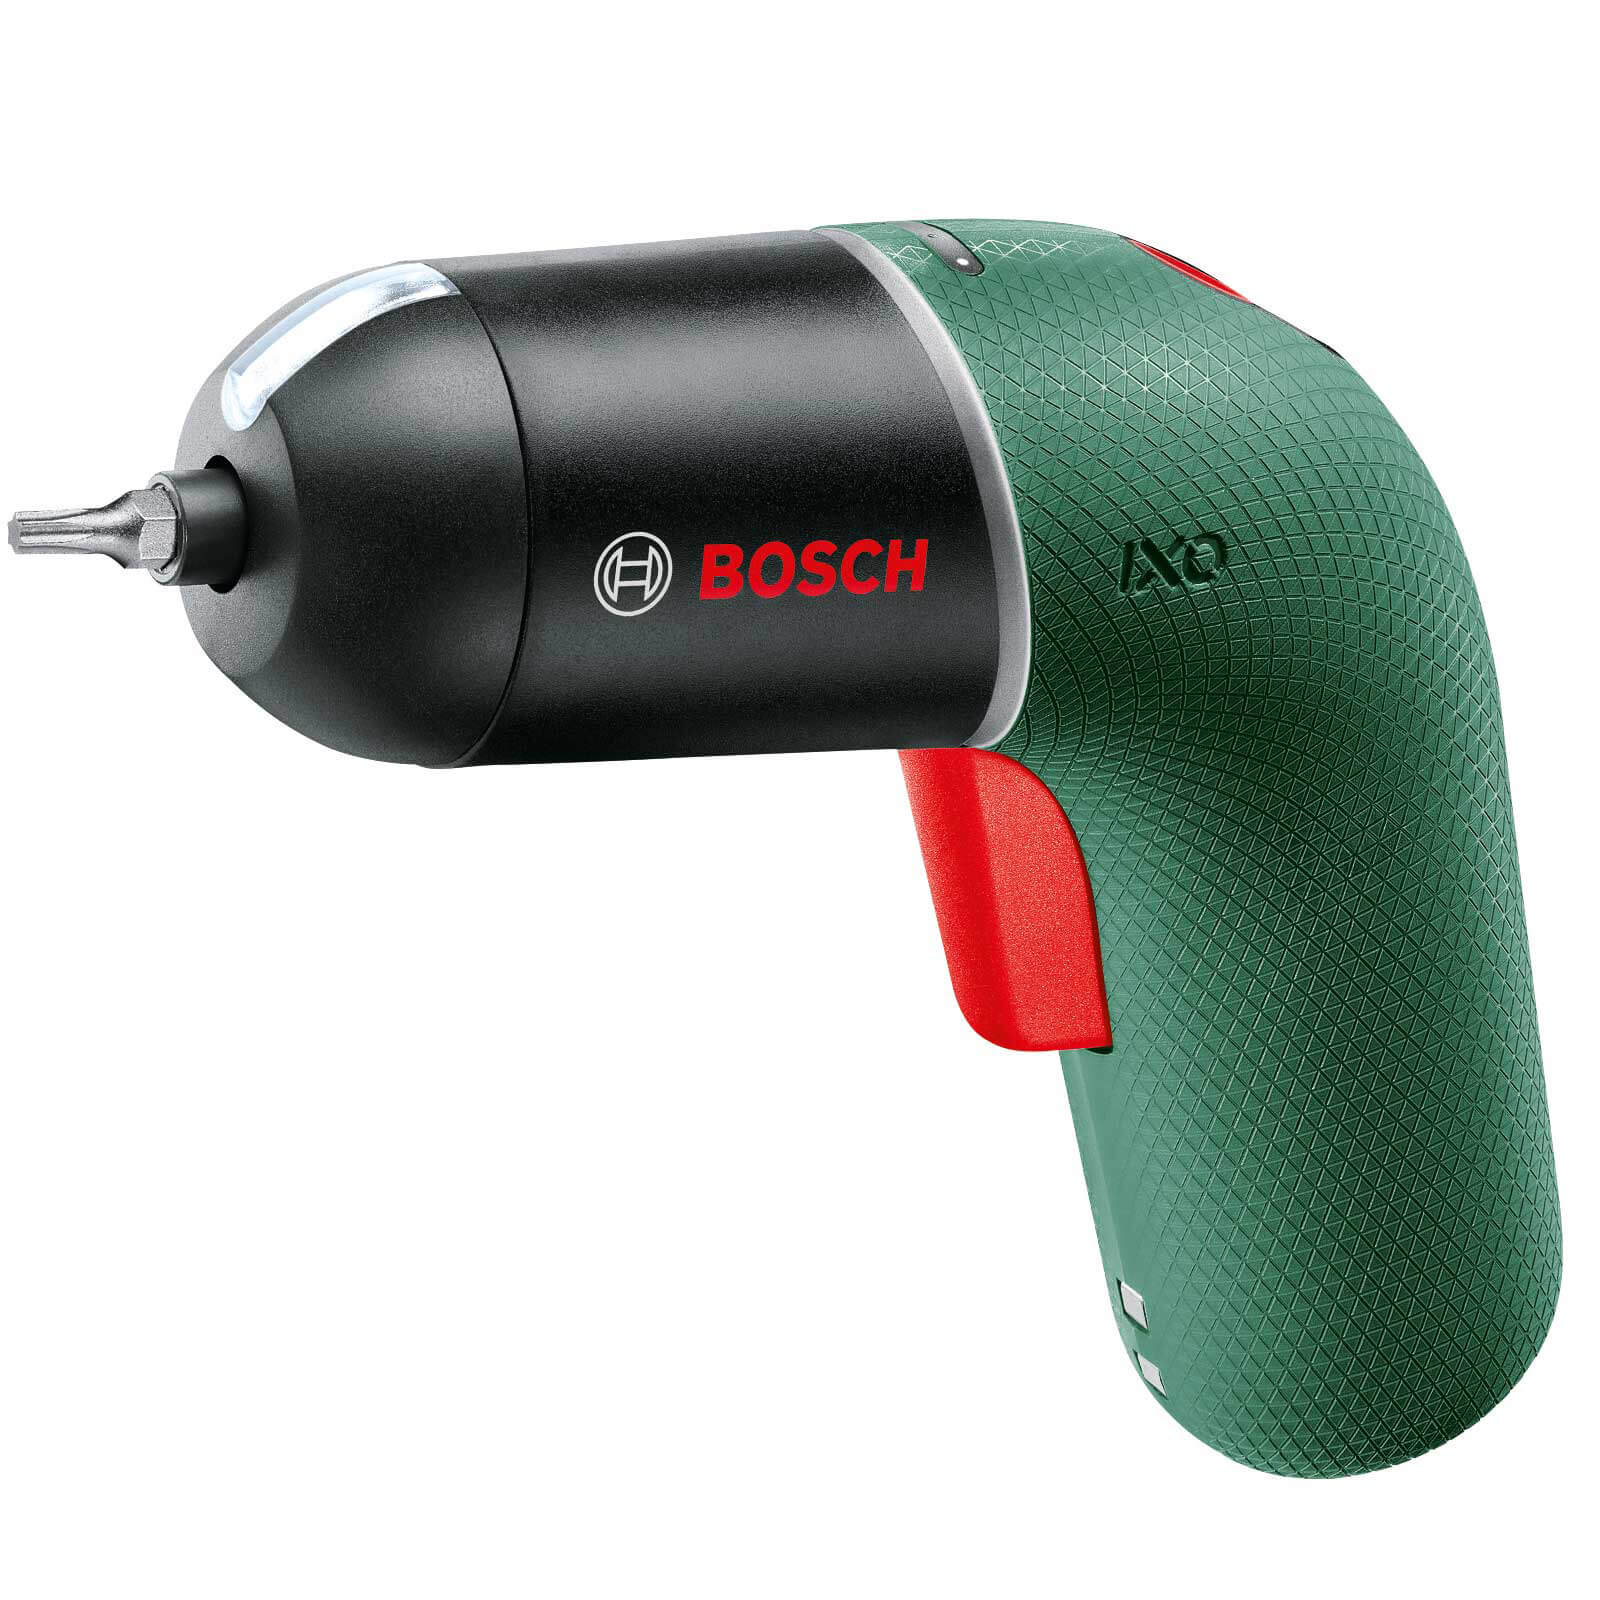 Bosch IXO Cutter especificaciones